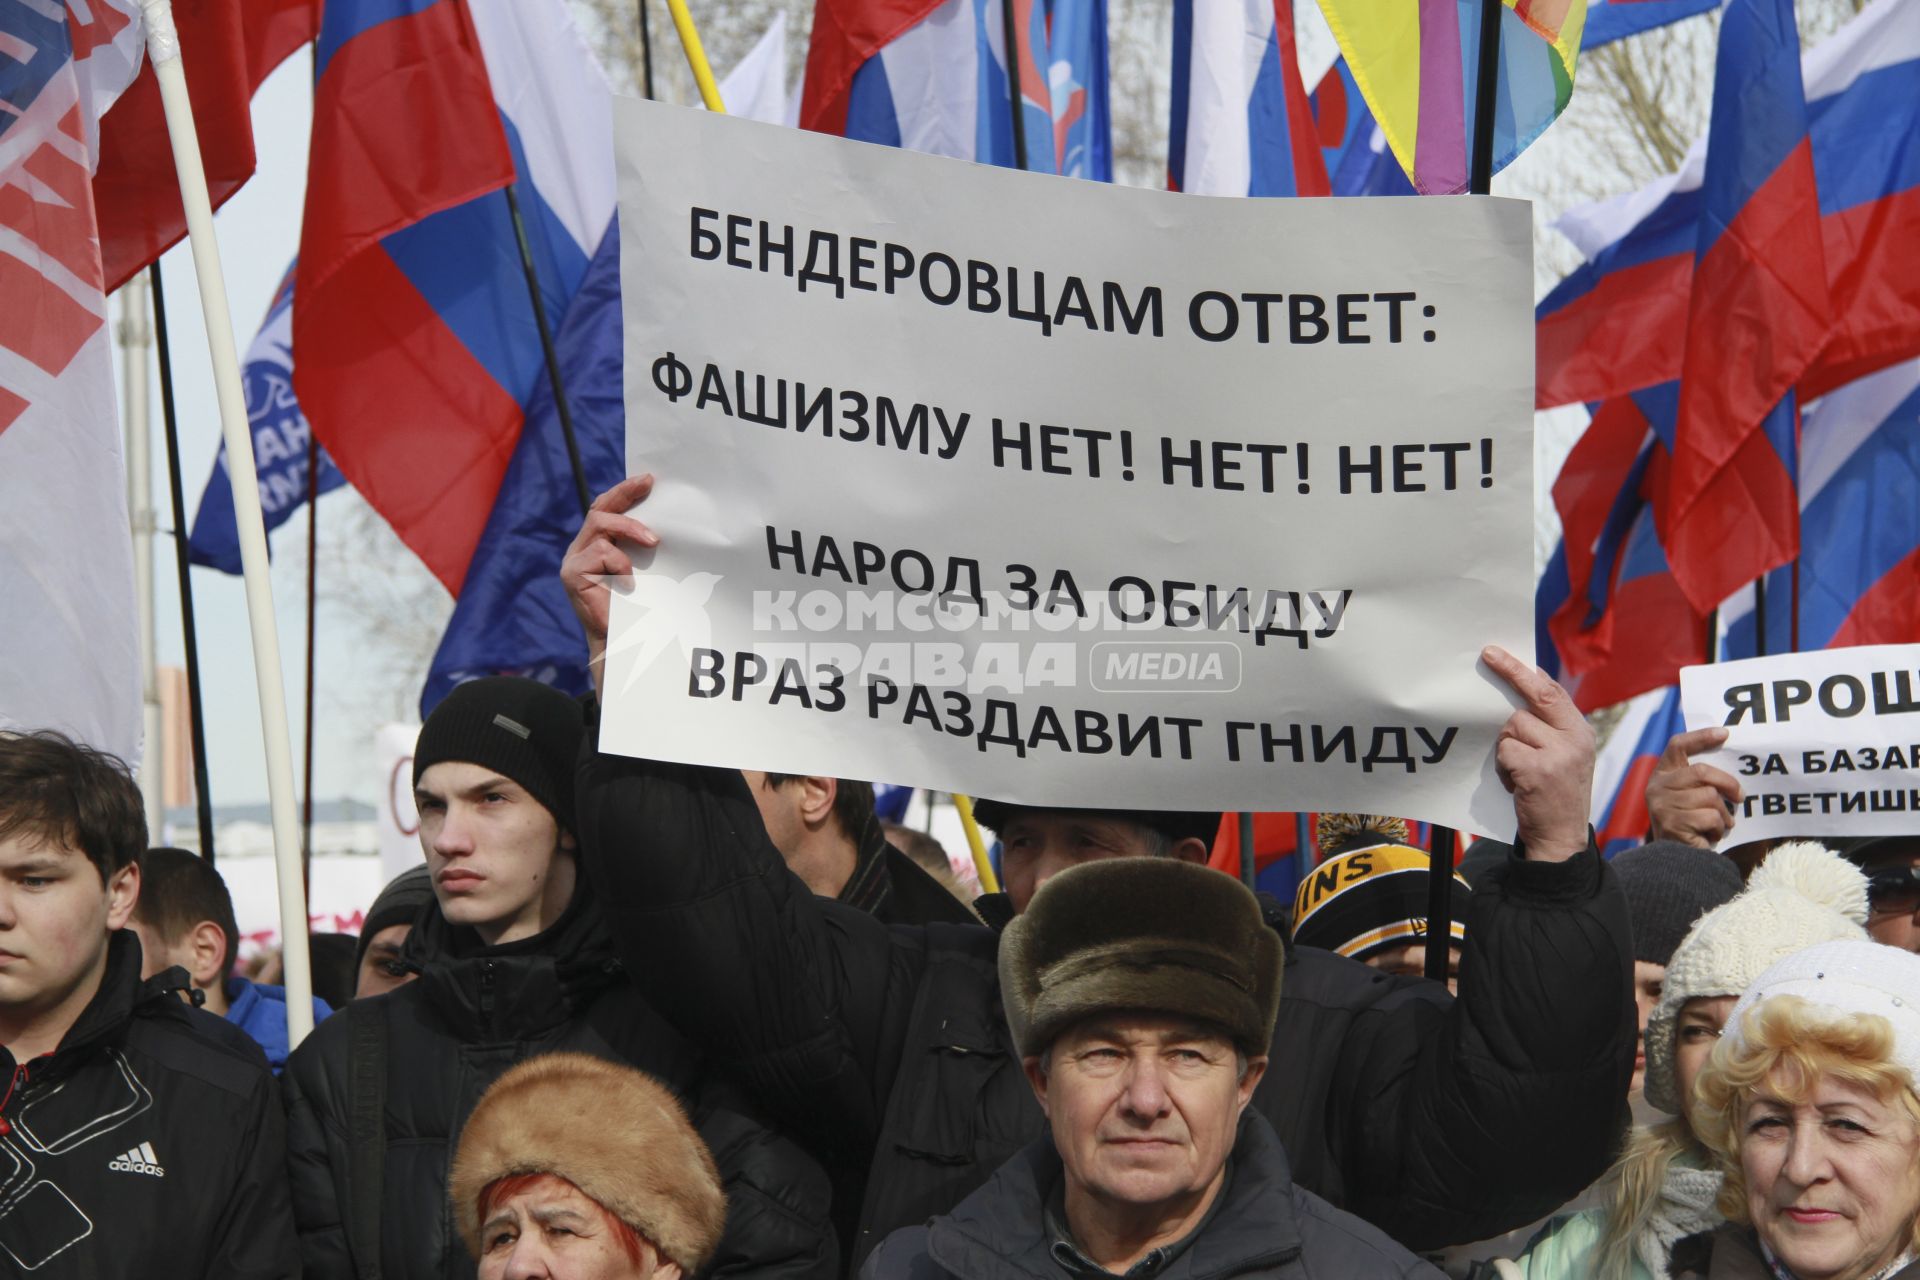 Митинг в поддержку поддержка Крыма в Барнауле. На снимке: митингующий с плакатом: `Бендеровцам ответ: Фашизму нет! нет! нет! Народ за обиду враз раздавит гниду`.